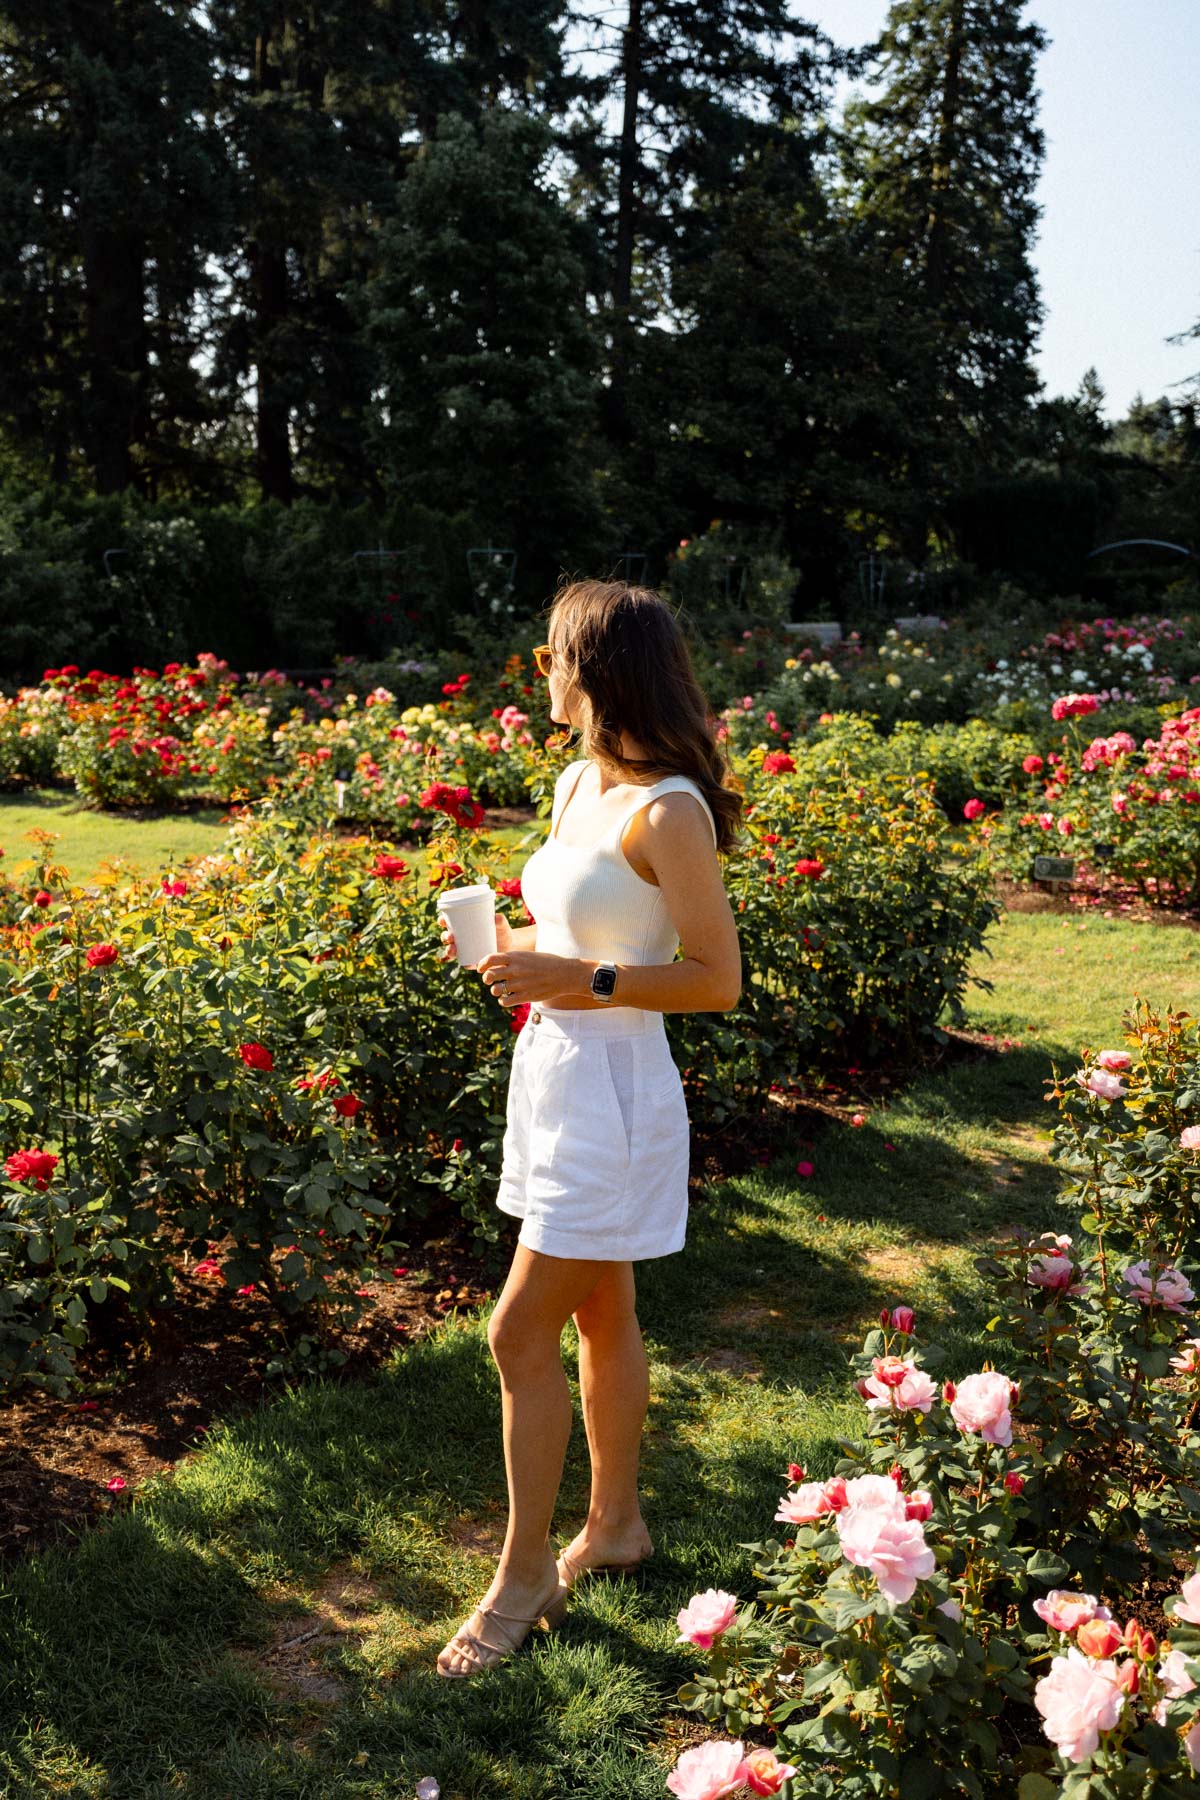 Visiting the Portland Rose Garden